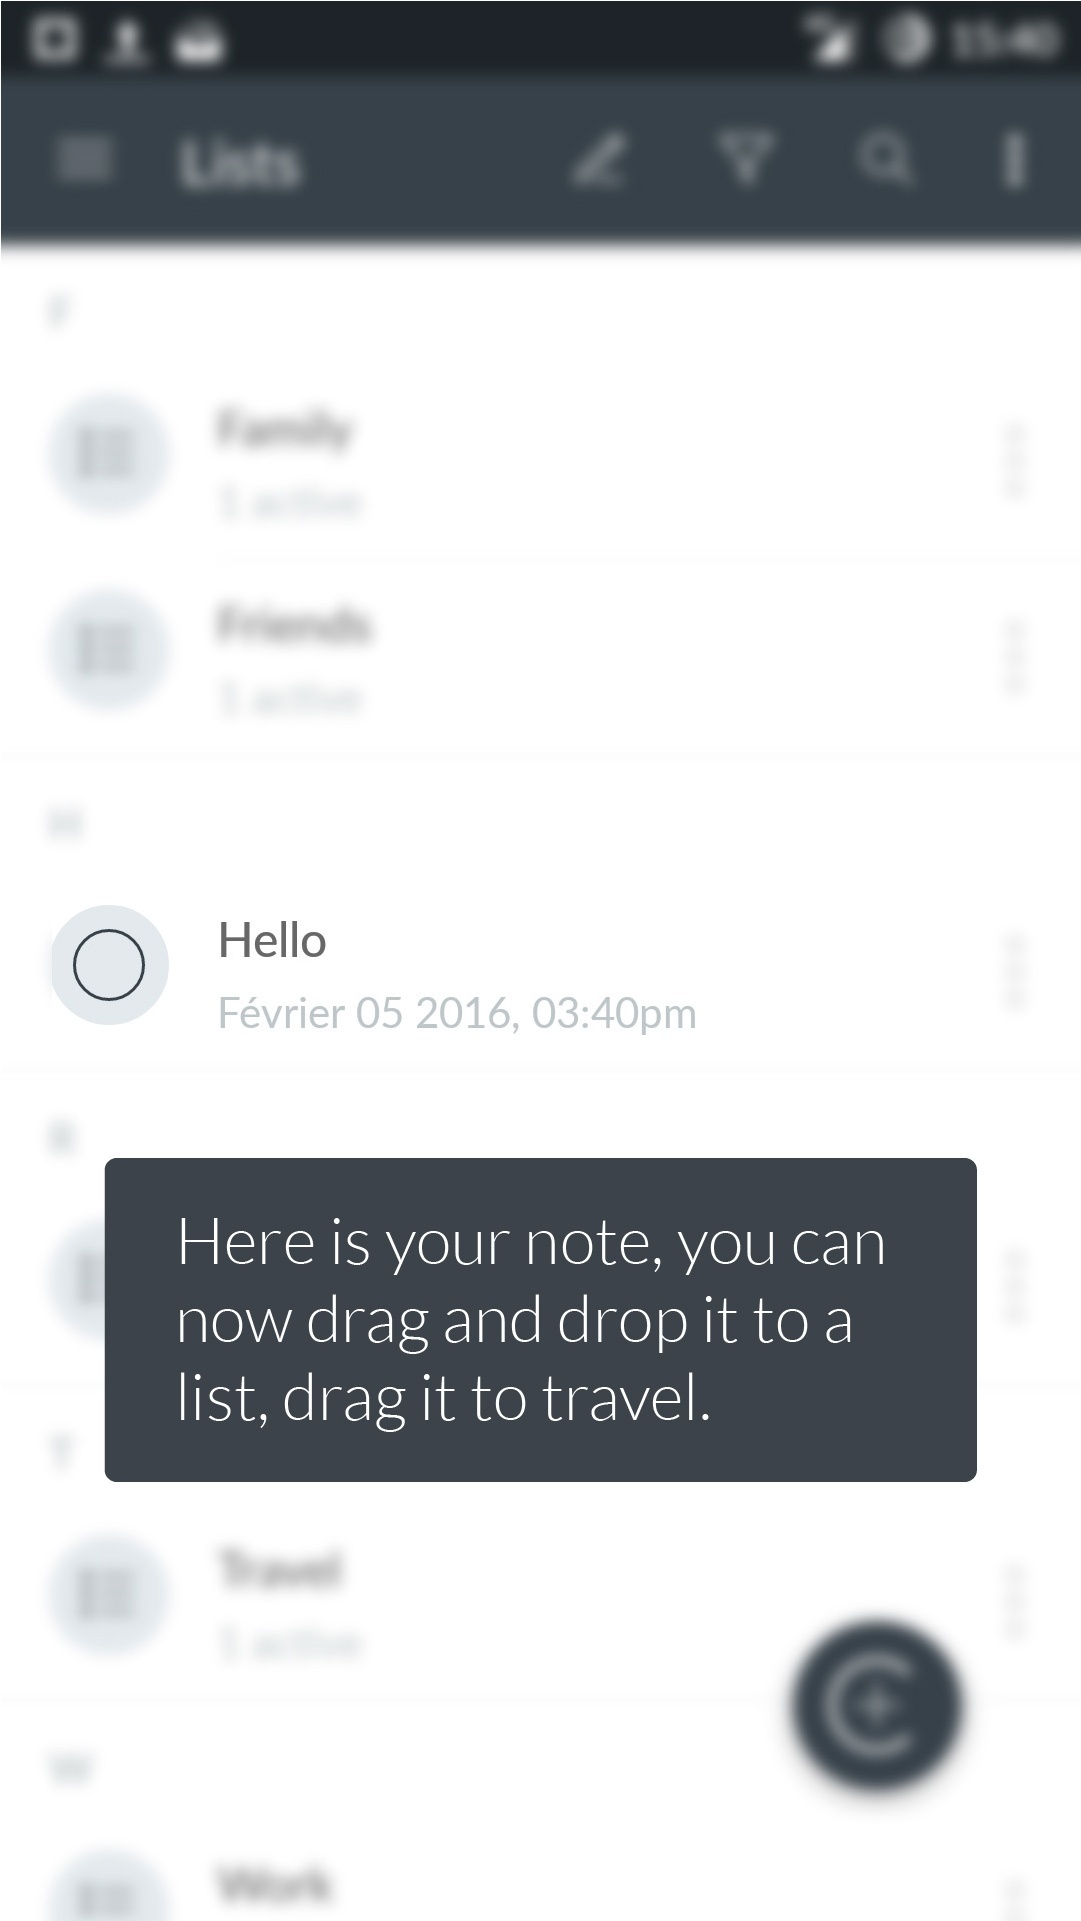 Ecran de l'application montrant la note parmi les listes et qui explique qu'on peut la glisser dans la liste 'voyages'.